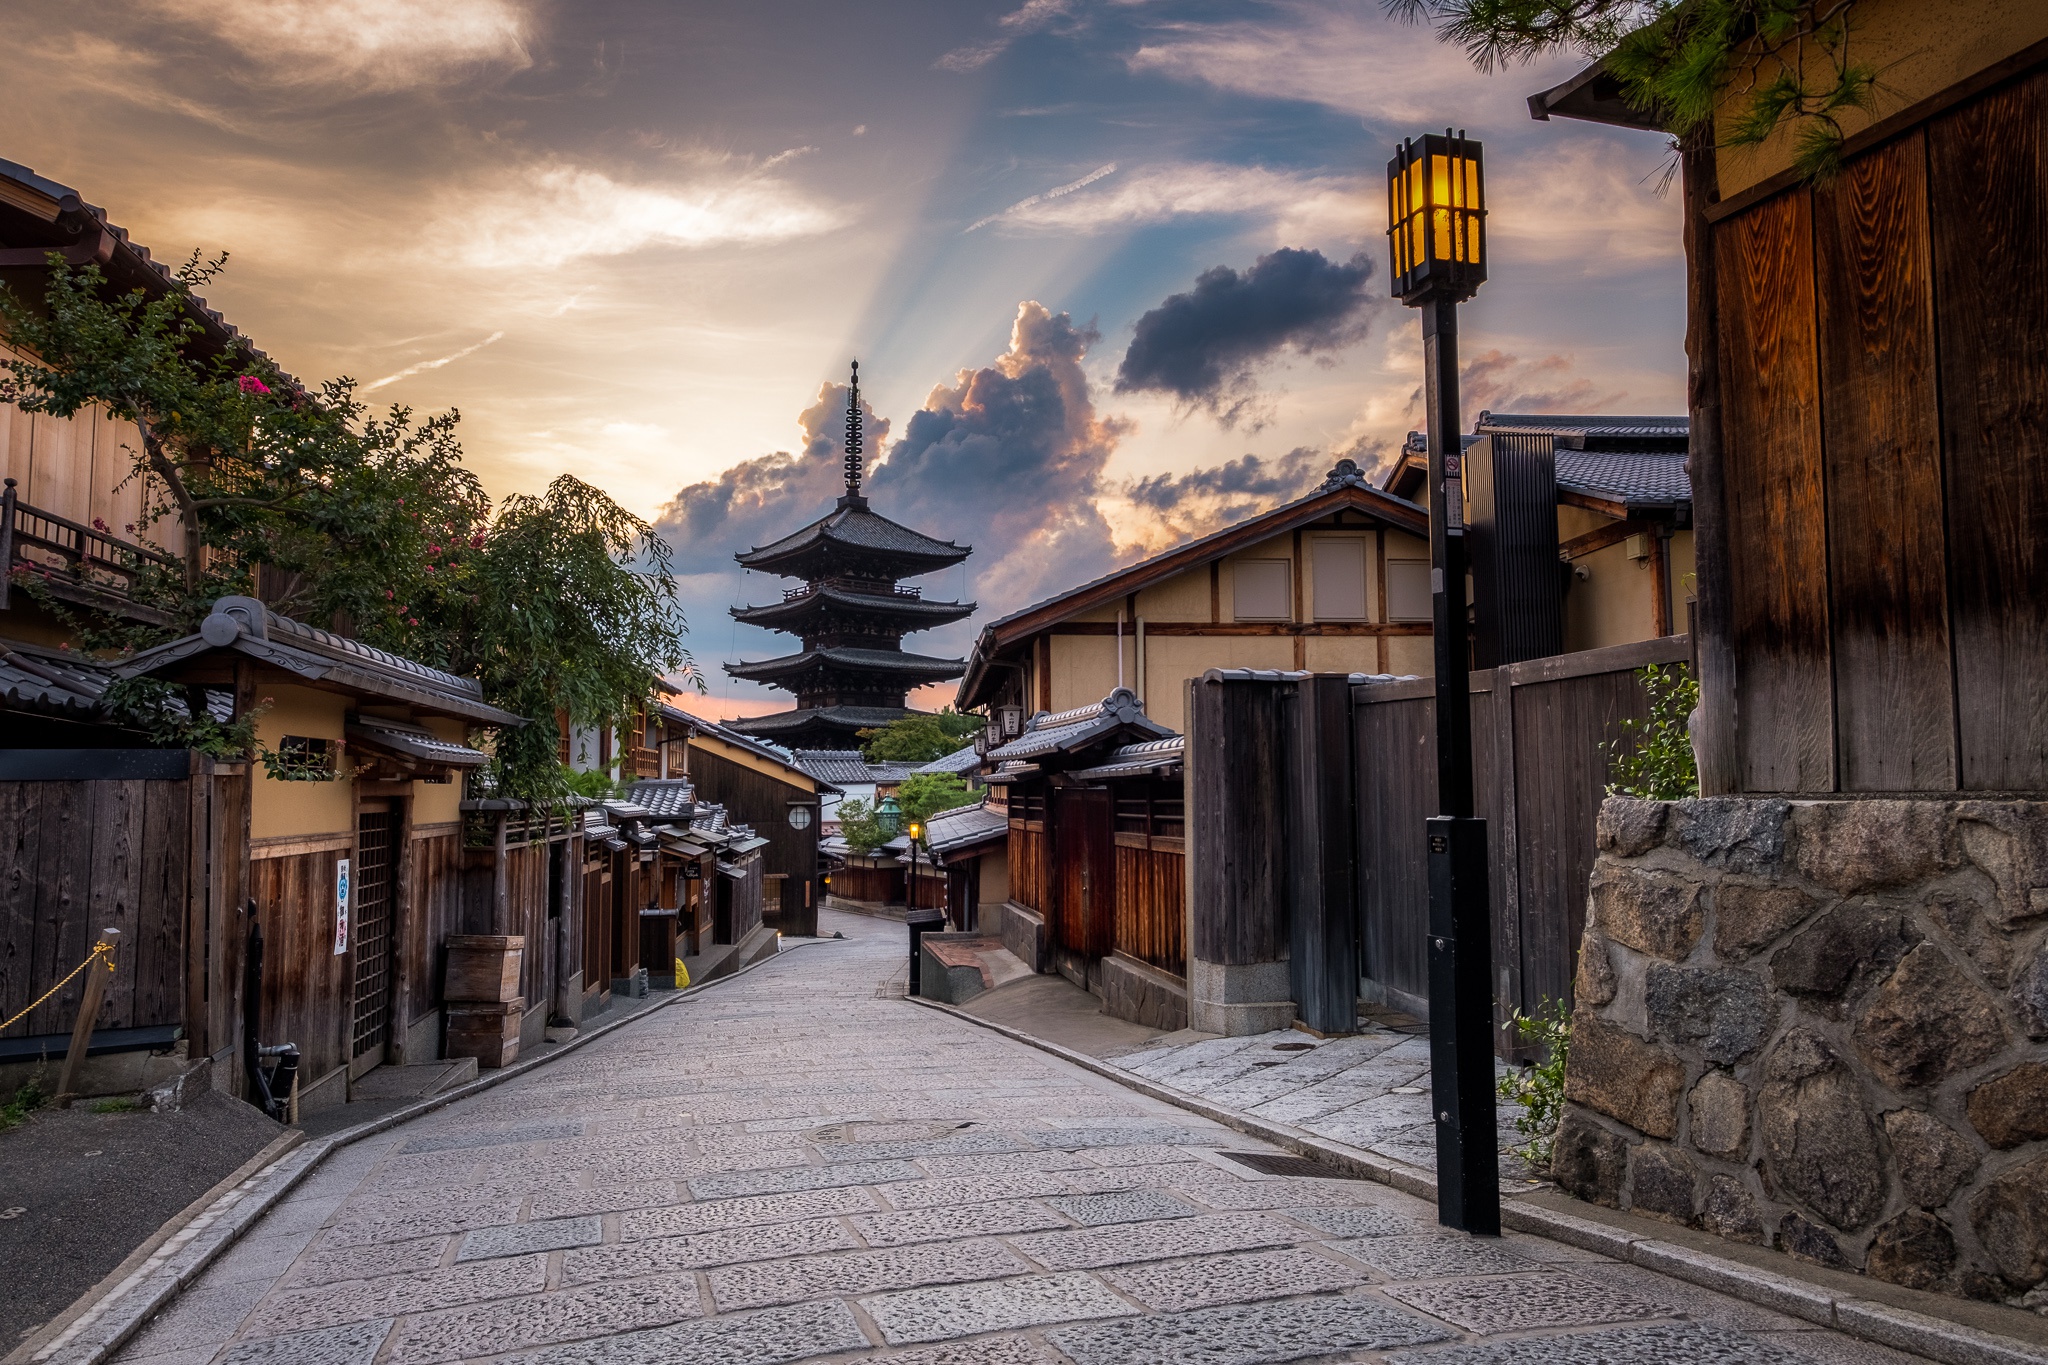 South japan. Япония Киото улицы. Киото Япония улочки. Киото (город в Японии). Храм Киото Гион.